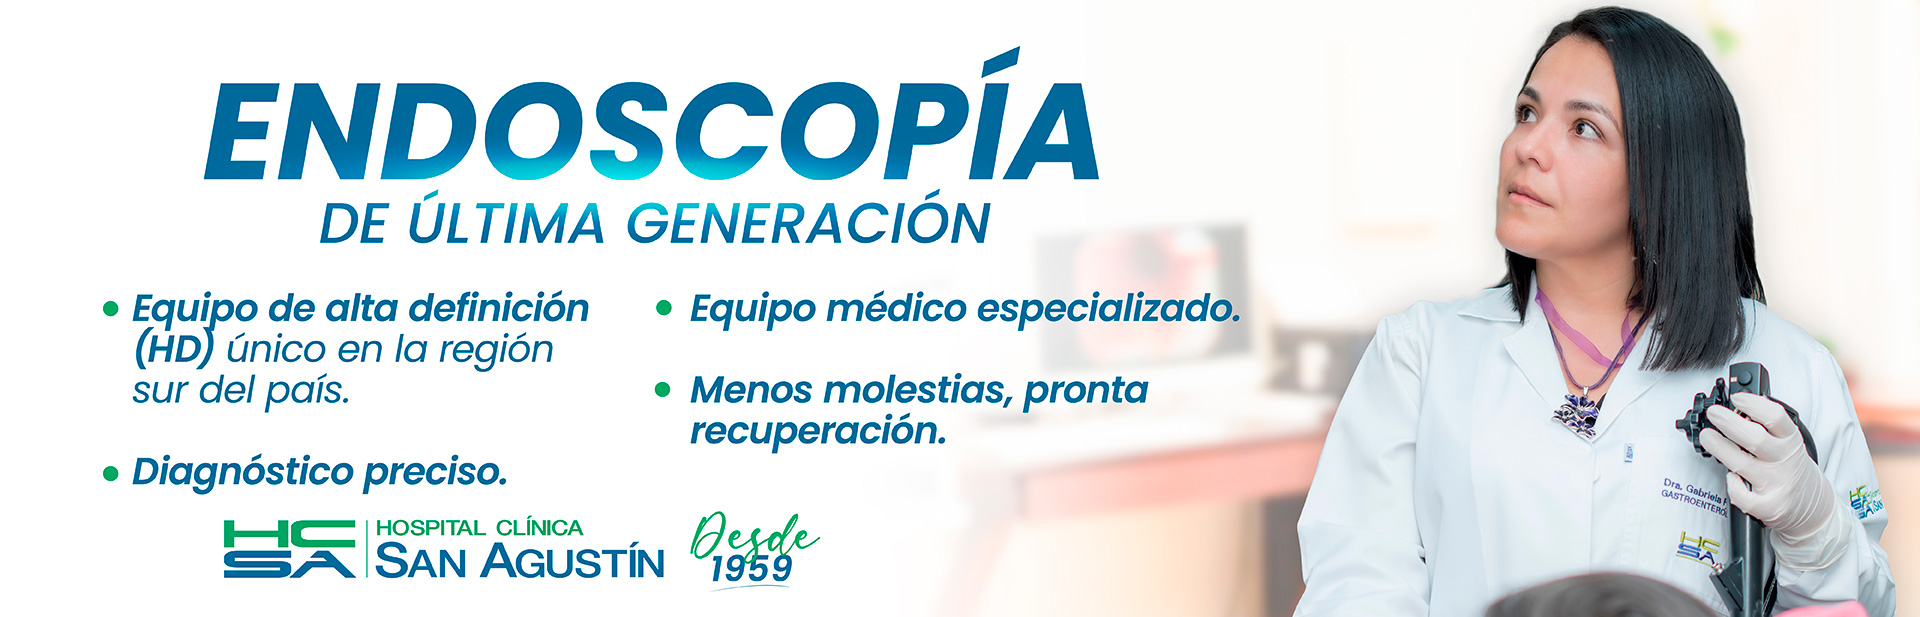 Endoscopía de última generación | Hospital Clínica San Agustín